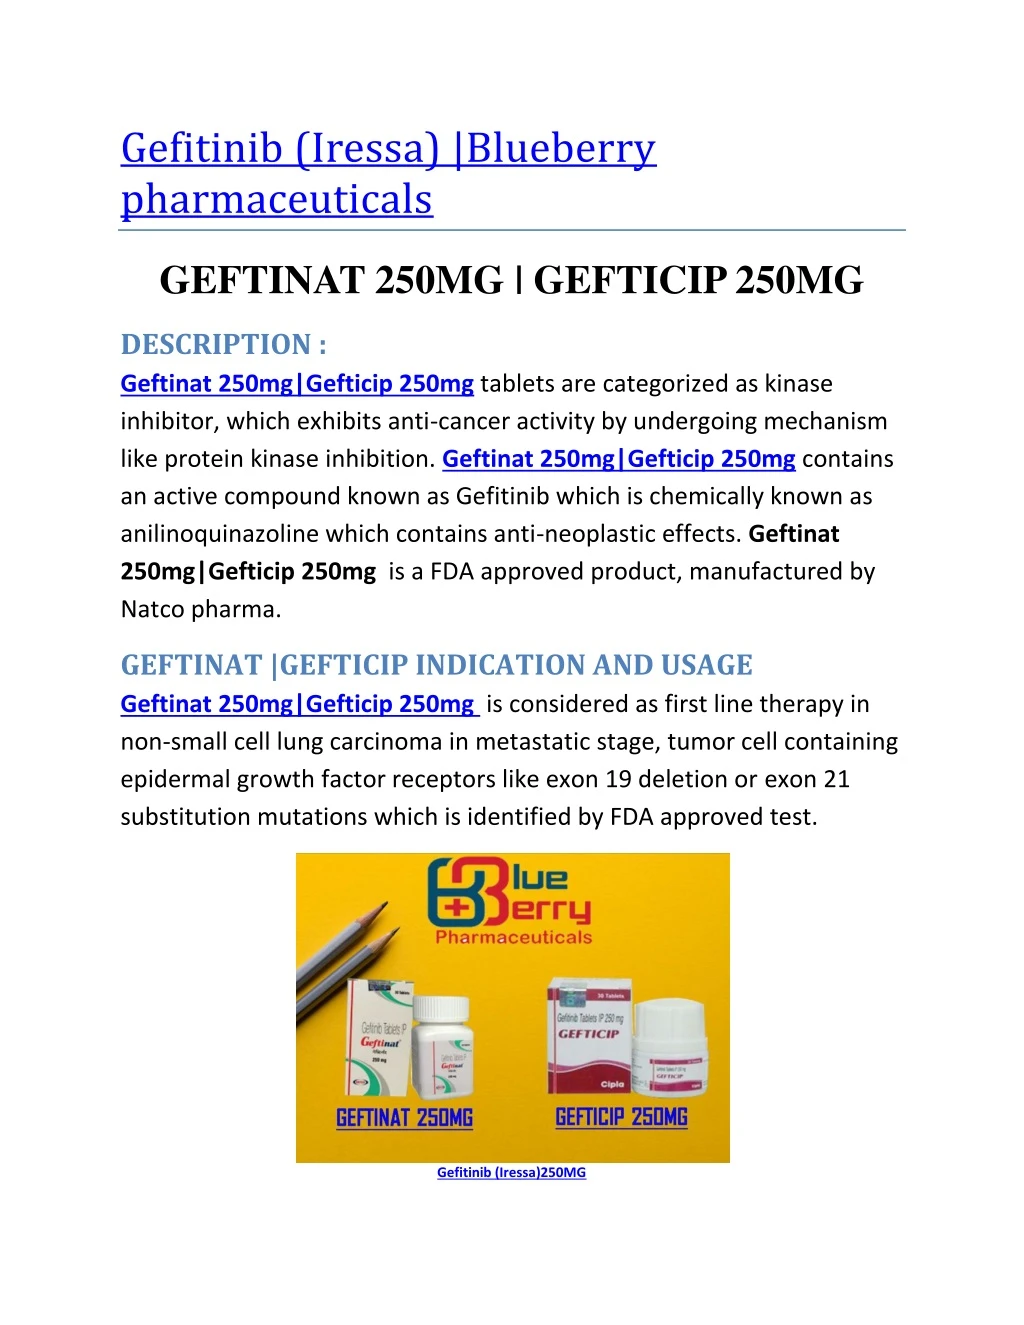 gefitinib iressa blueberry pharmaceuticals